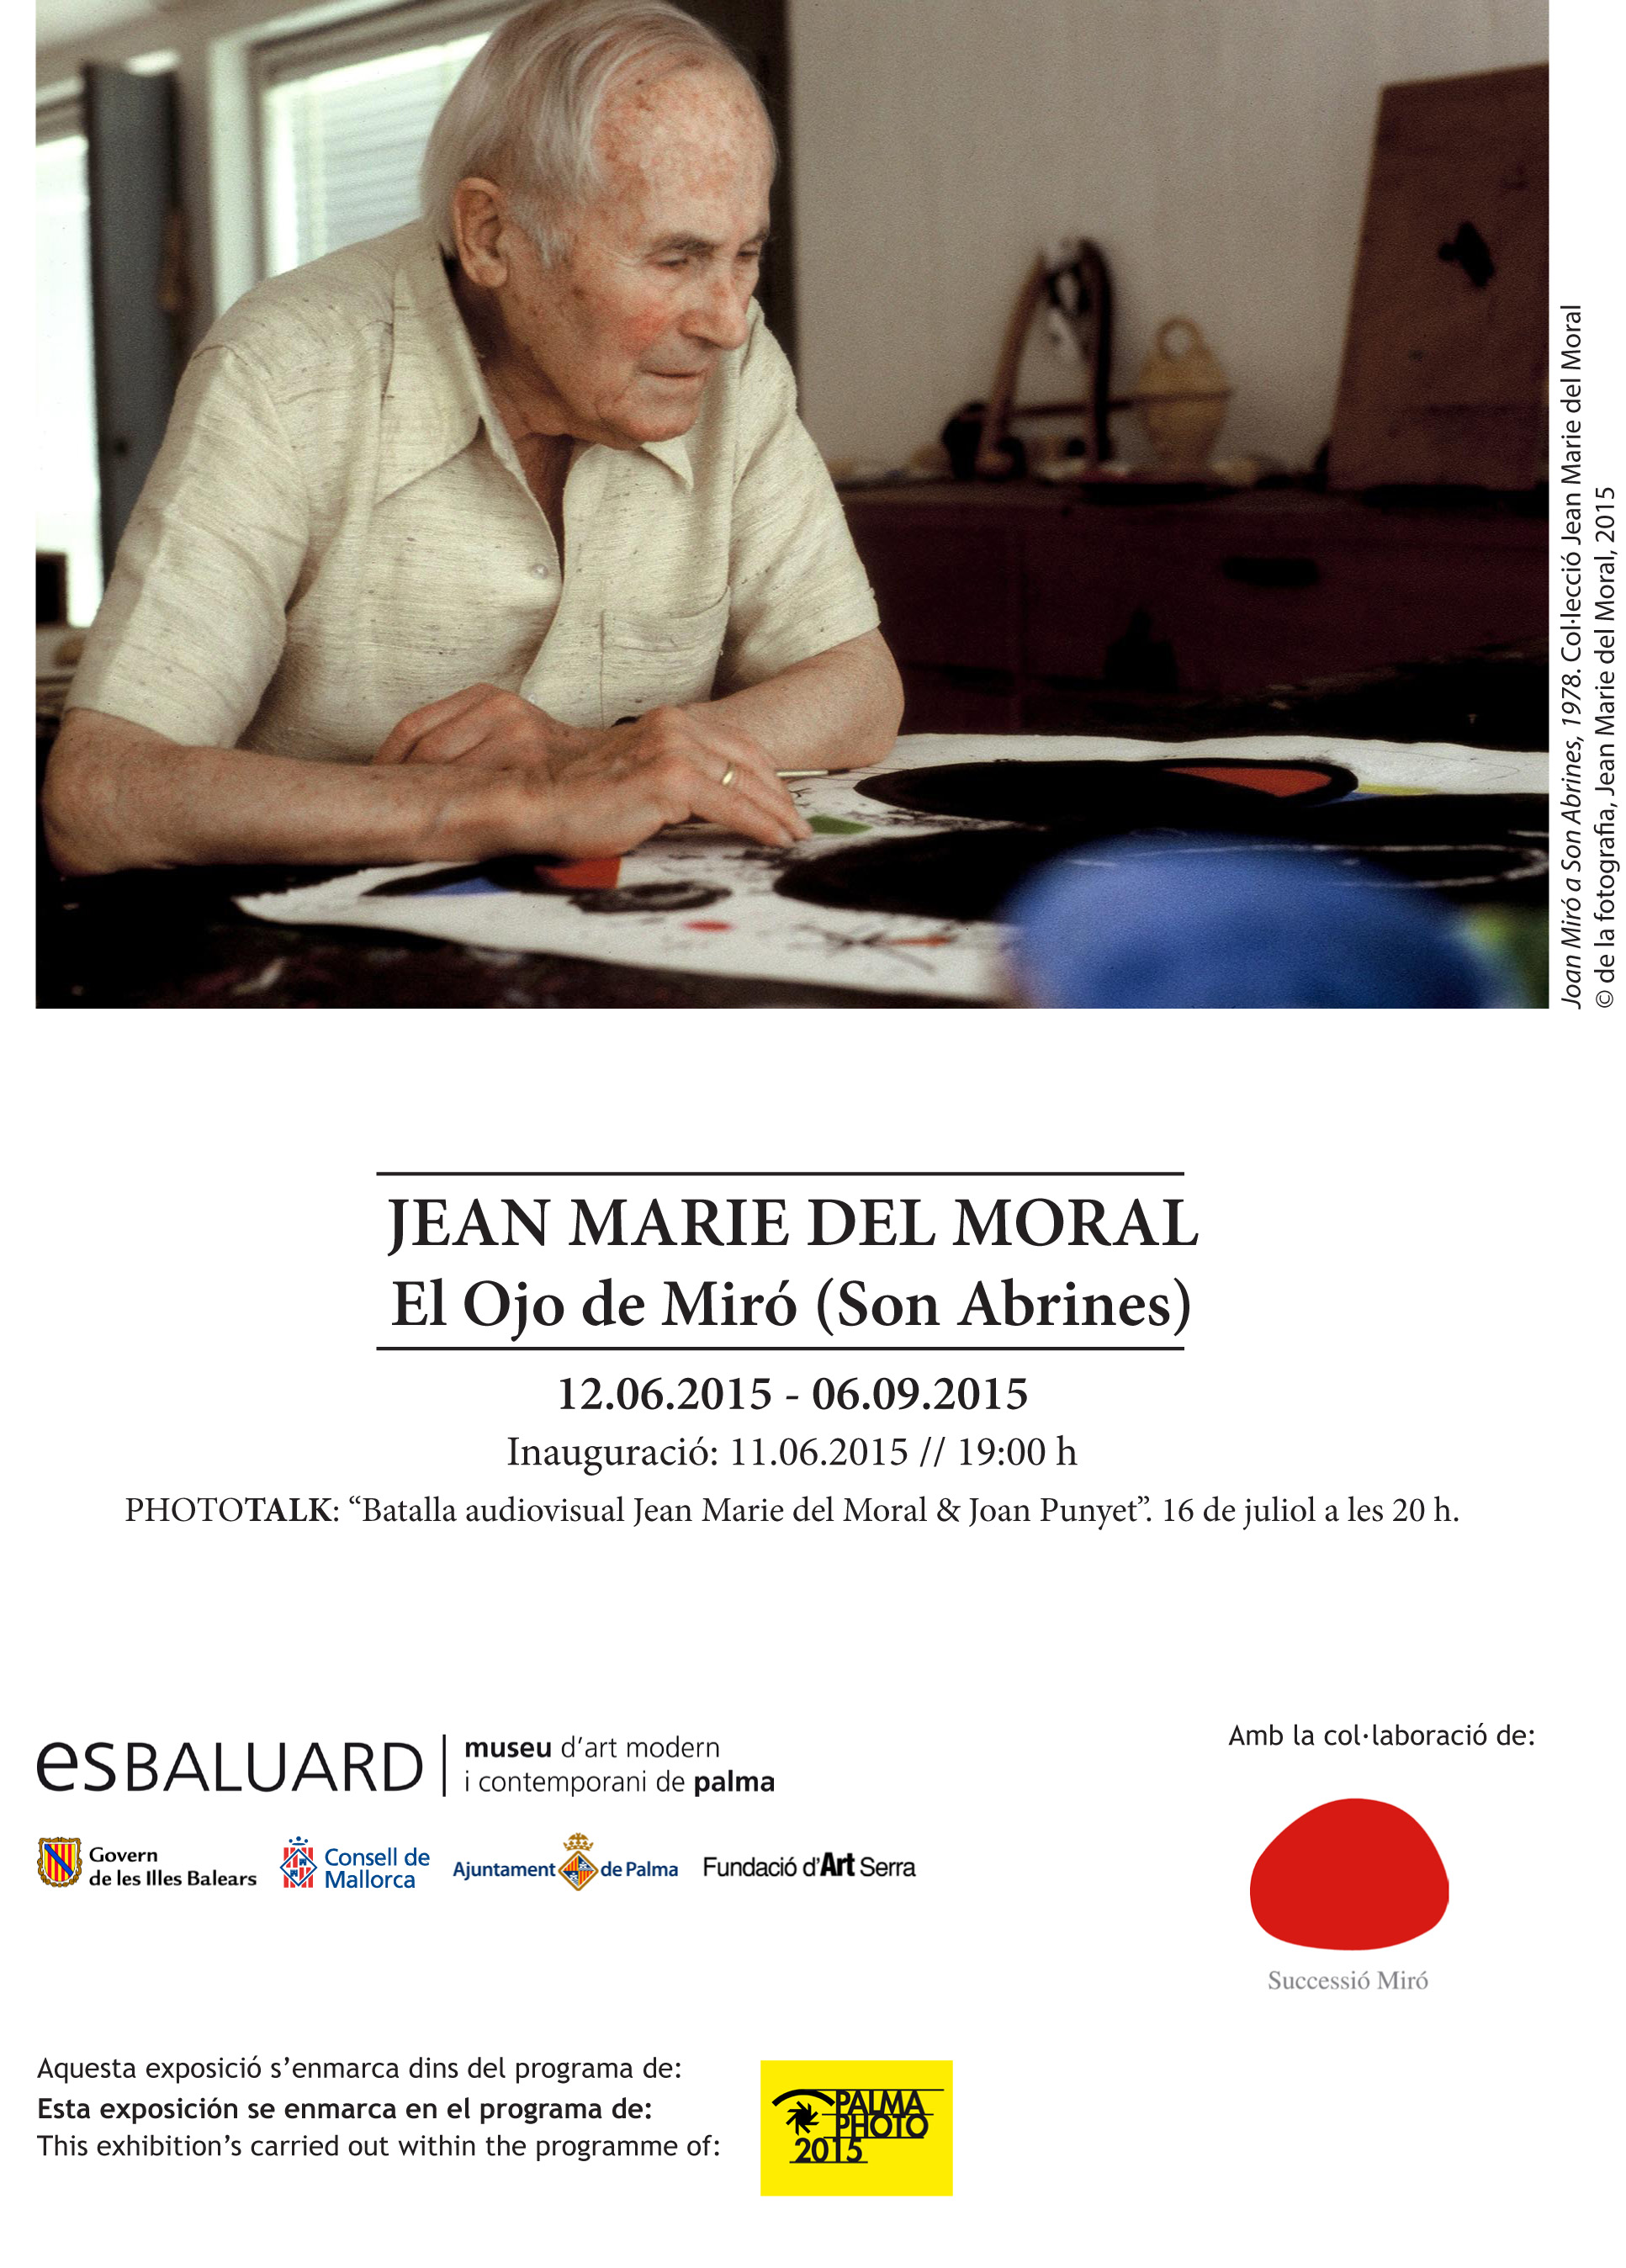 JEAN MARIE DEL MORAL. EL OJO DE MIRÓ (SON ABRINES)